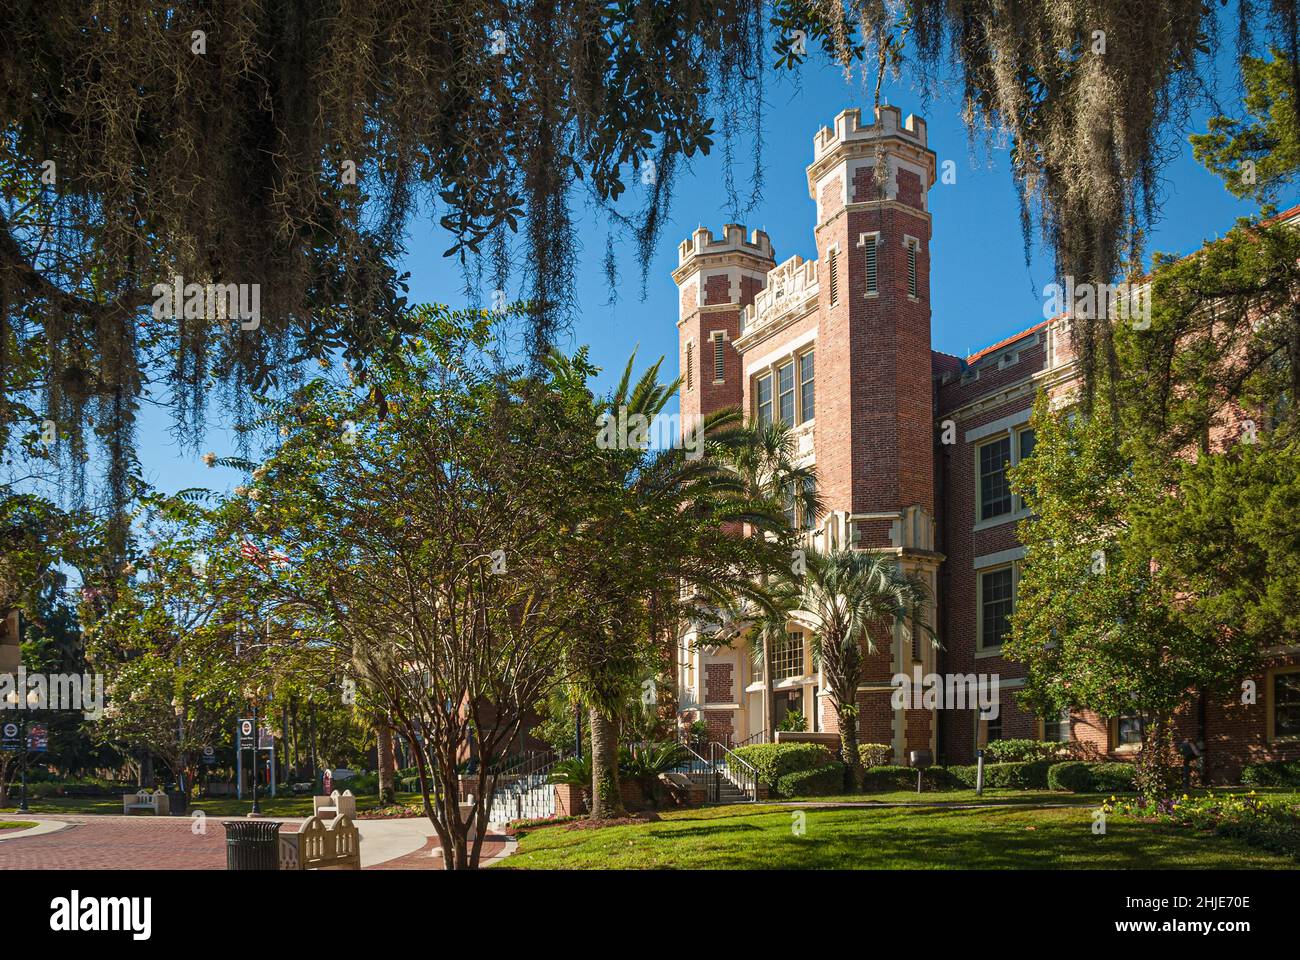 Le bâtiment Wescott de l'Université d'État de Floride, situé sur le campus de la FSU à Tallahassee, en Floride.(ÉTATS-UNIS) Banque D'Images